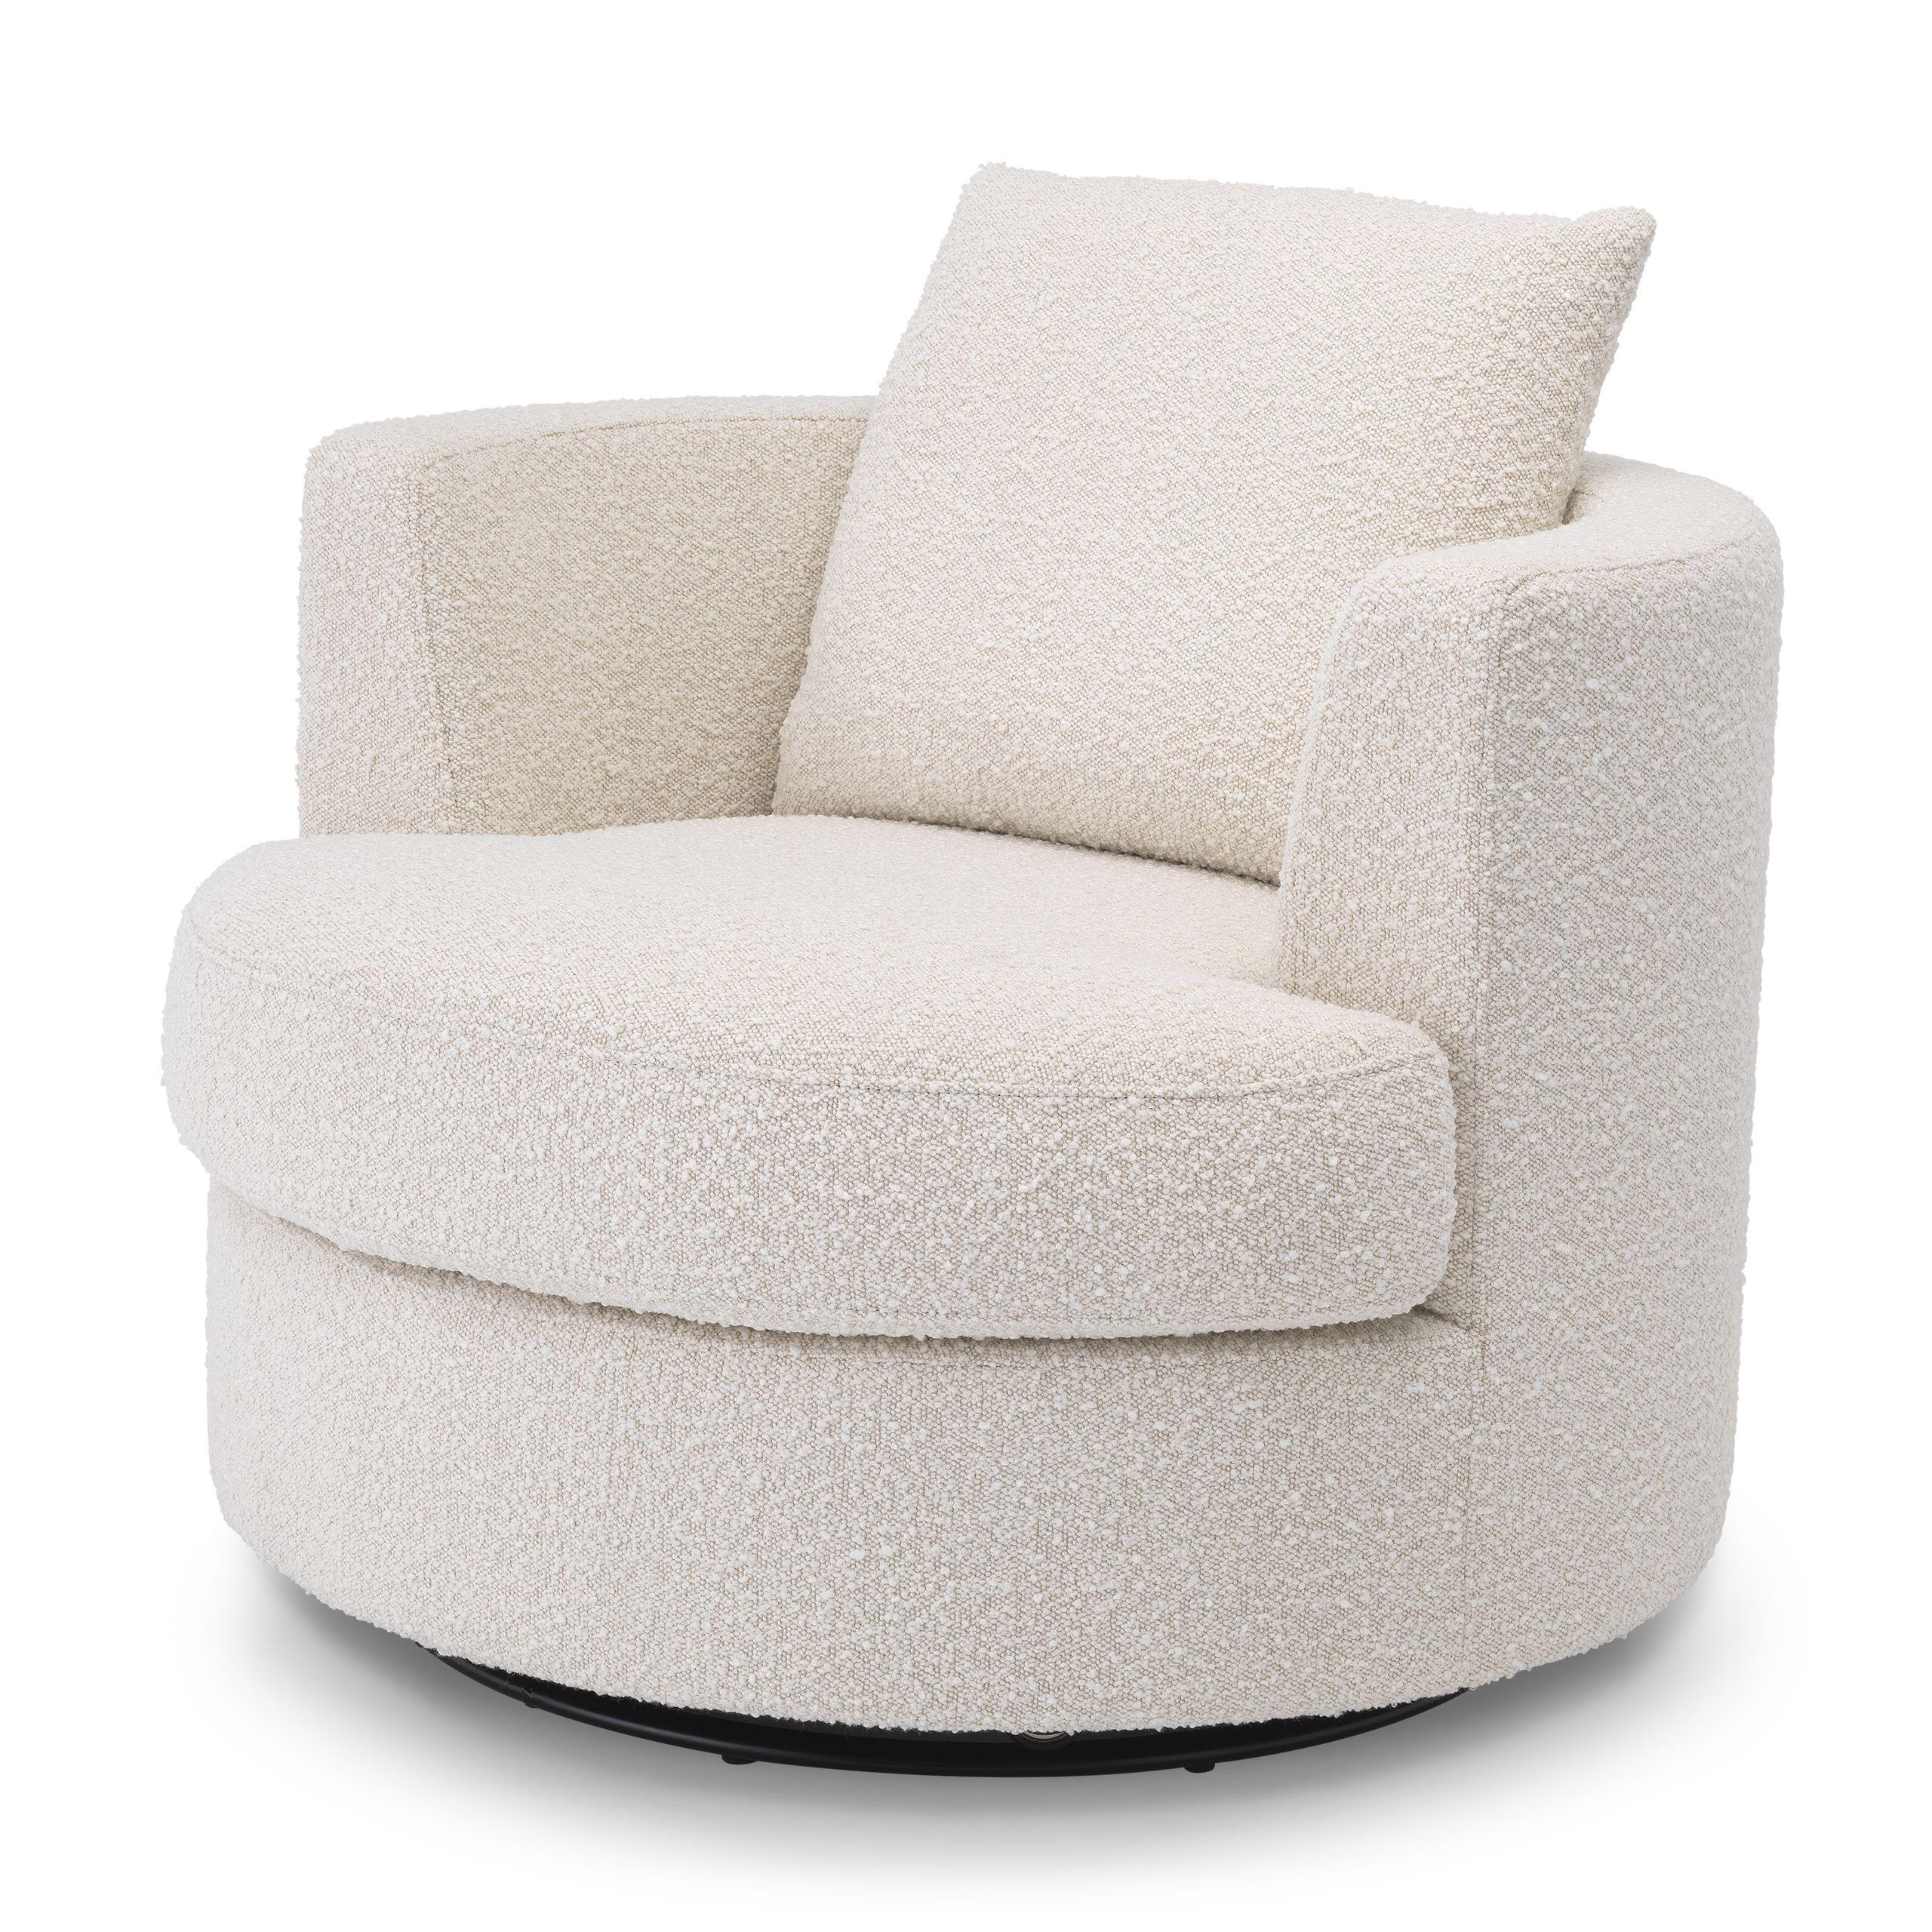 Купить Крутящееся кресло Swivel Chair Felix в интернет-магазине roooms.ru